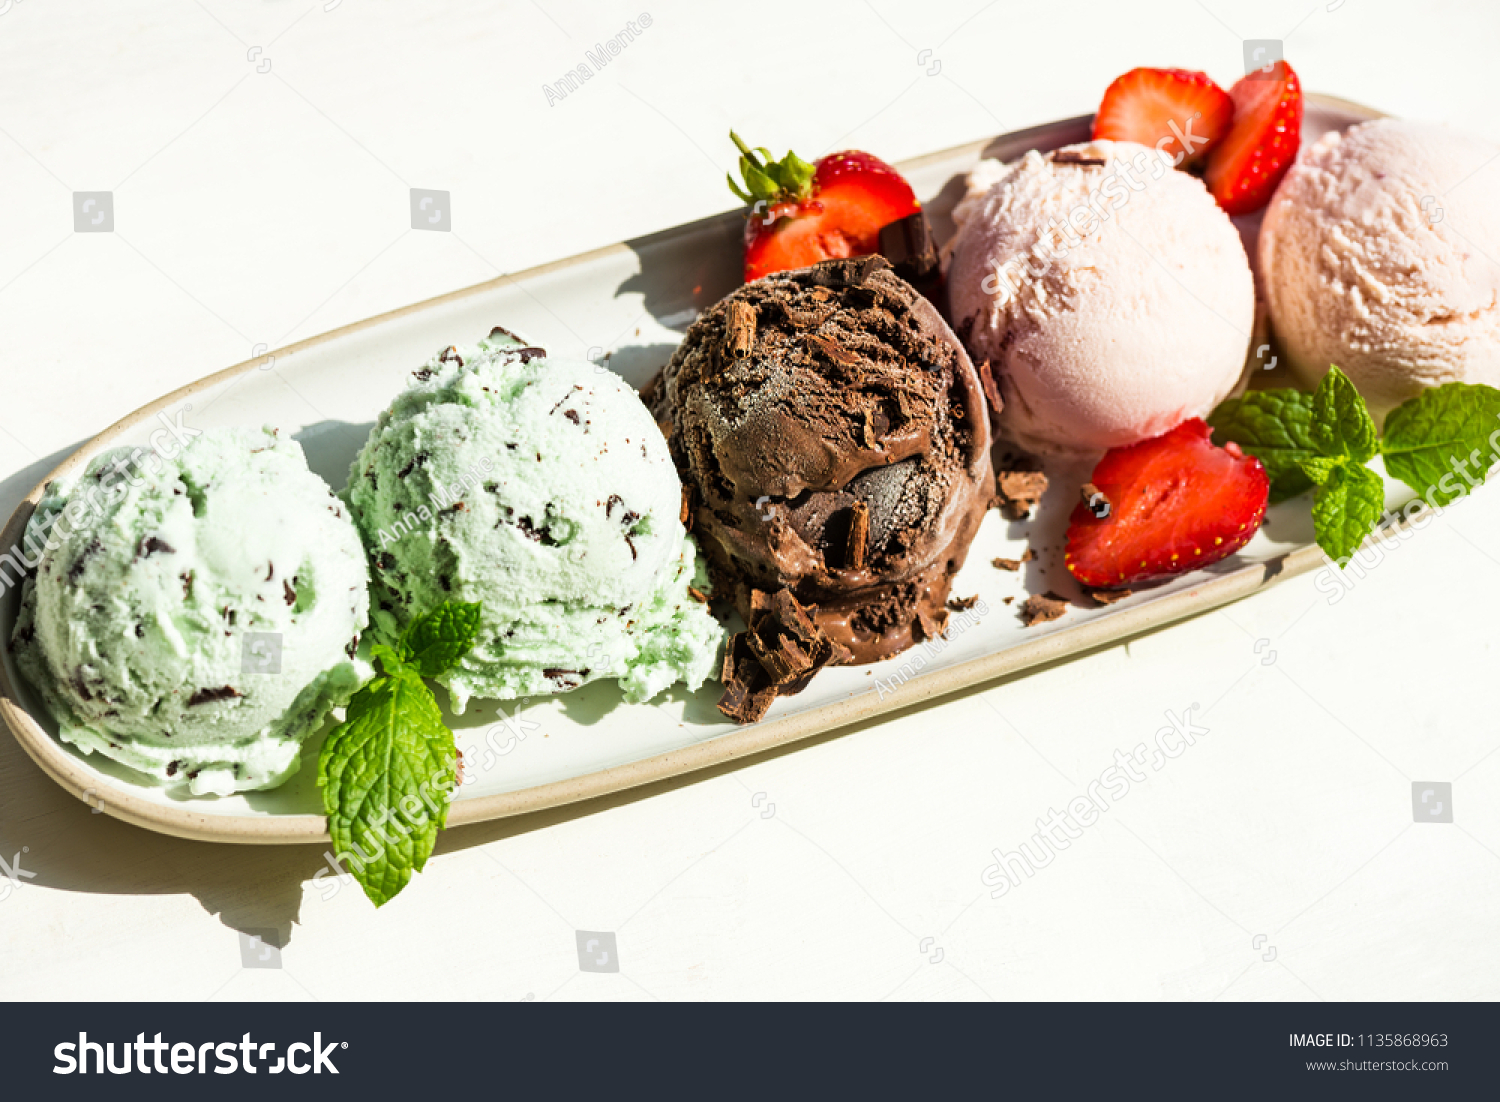 oval ice cream scoop